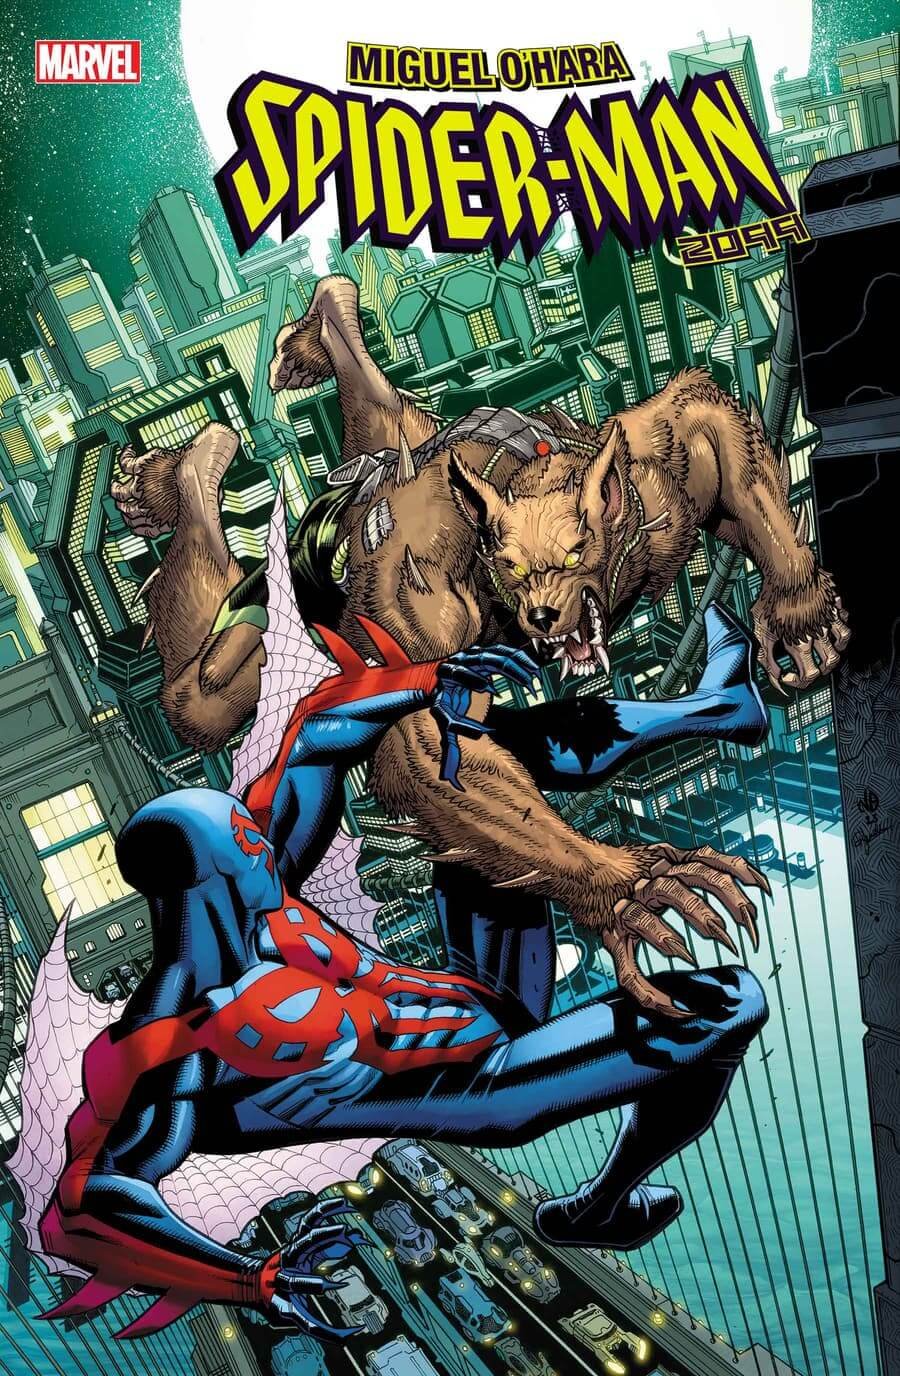 Couverture de Miguel O'Hara : Spider-Man 2099 3, rendant hommage à la première rencontre entre Spidey et le personnage d'horreur Licantropus dans Marvel Team-Up 12 de 1973.